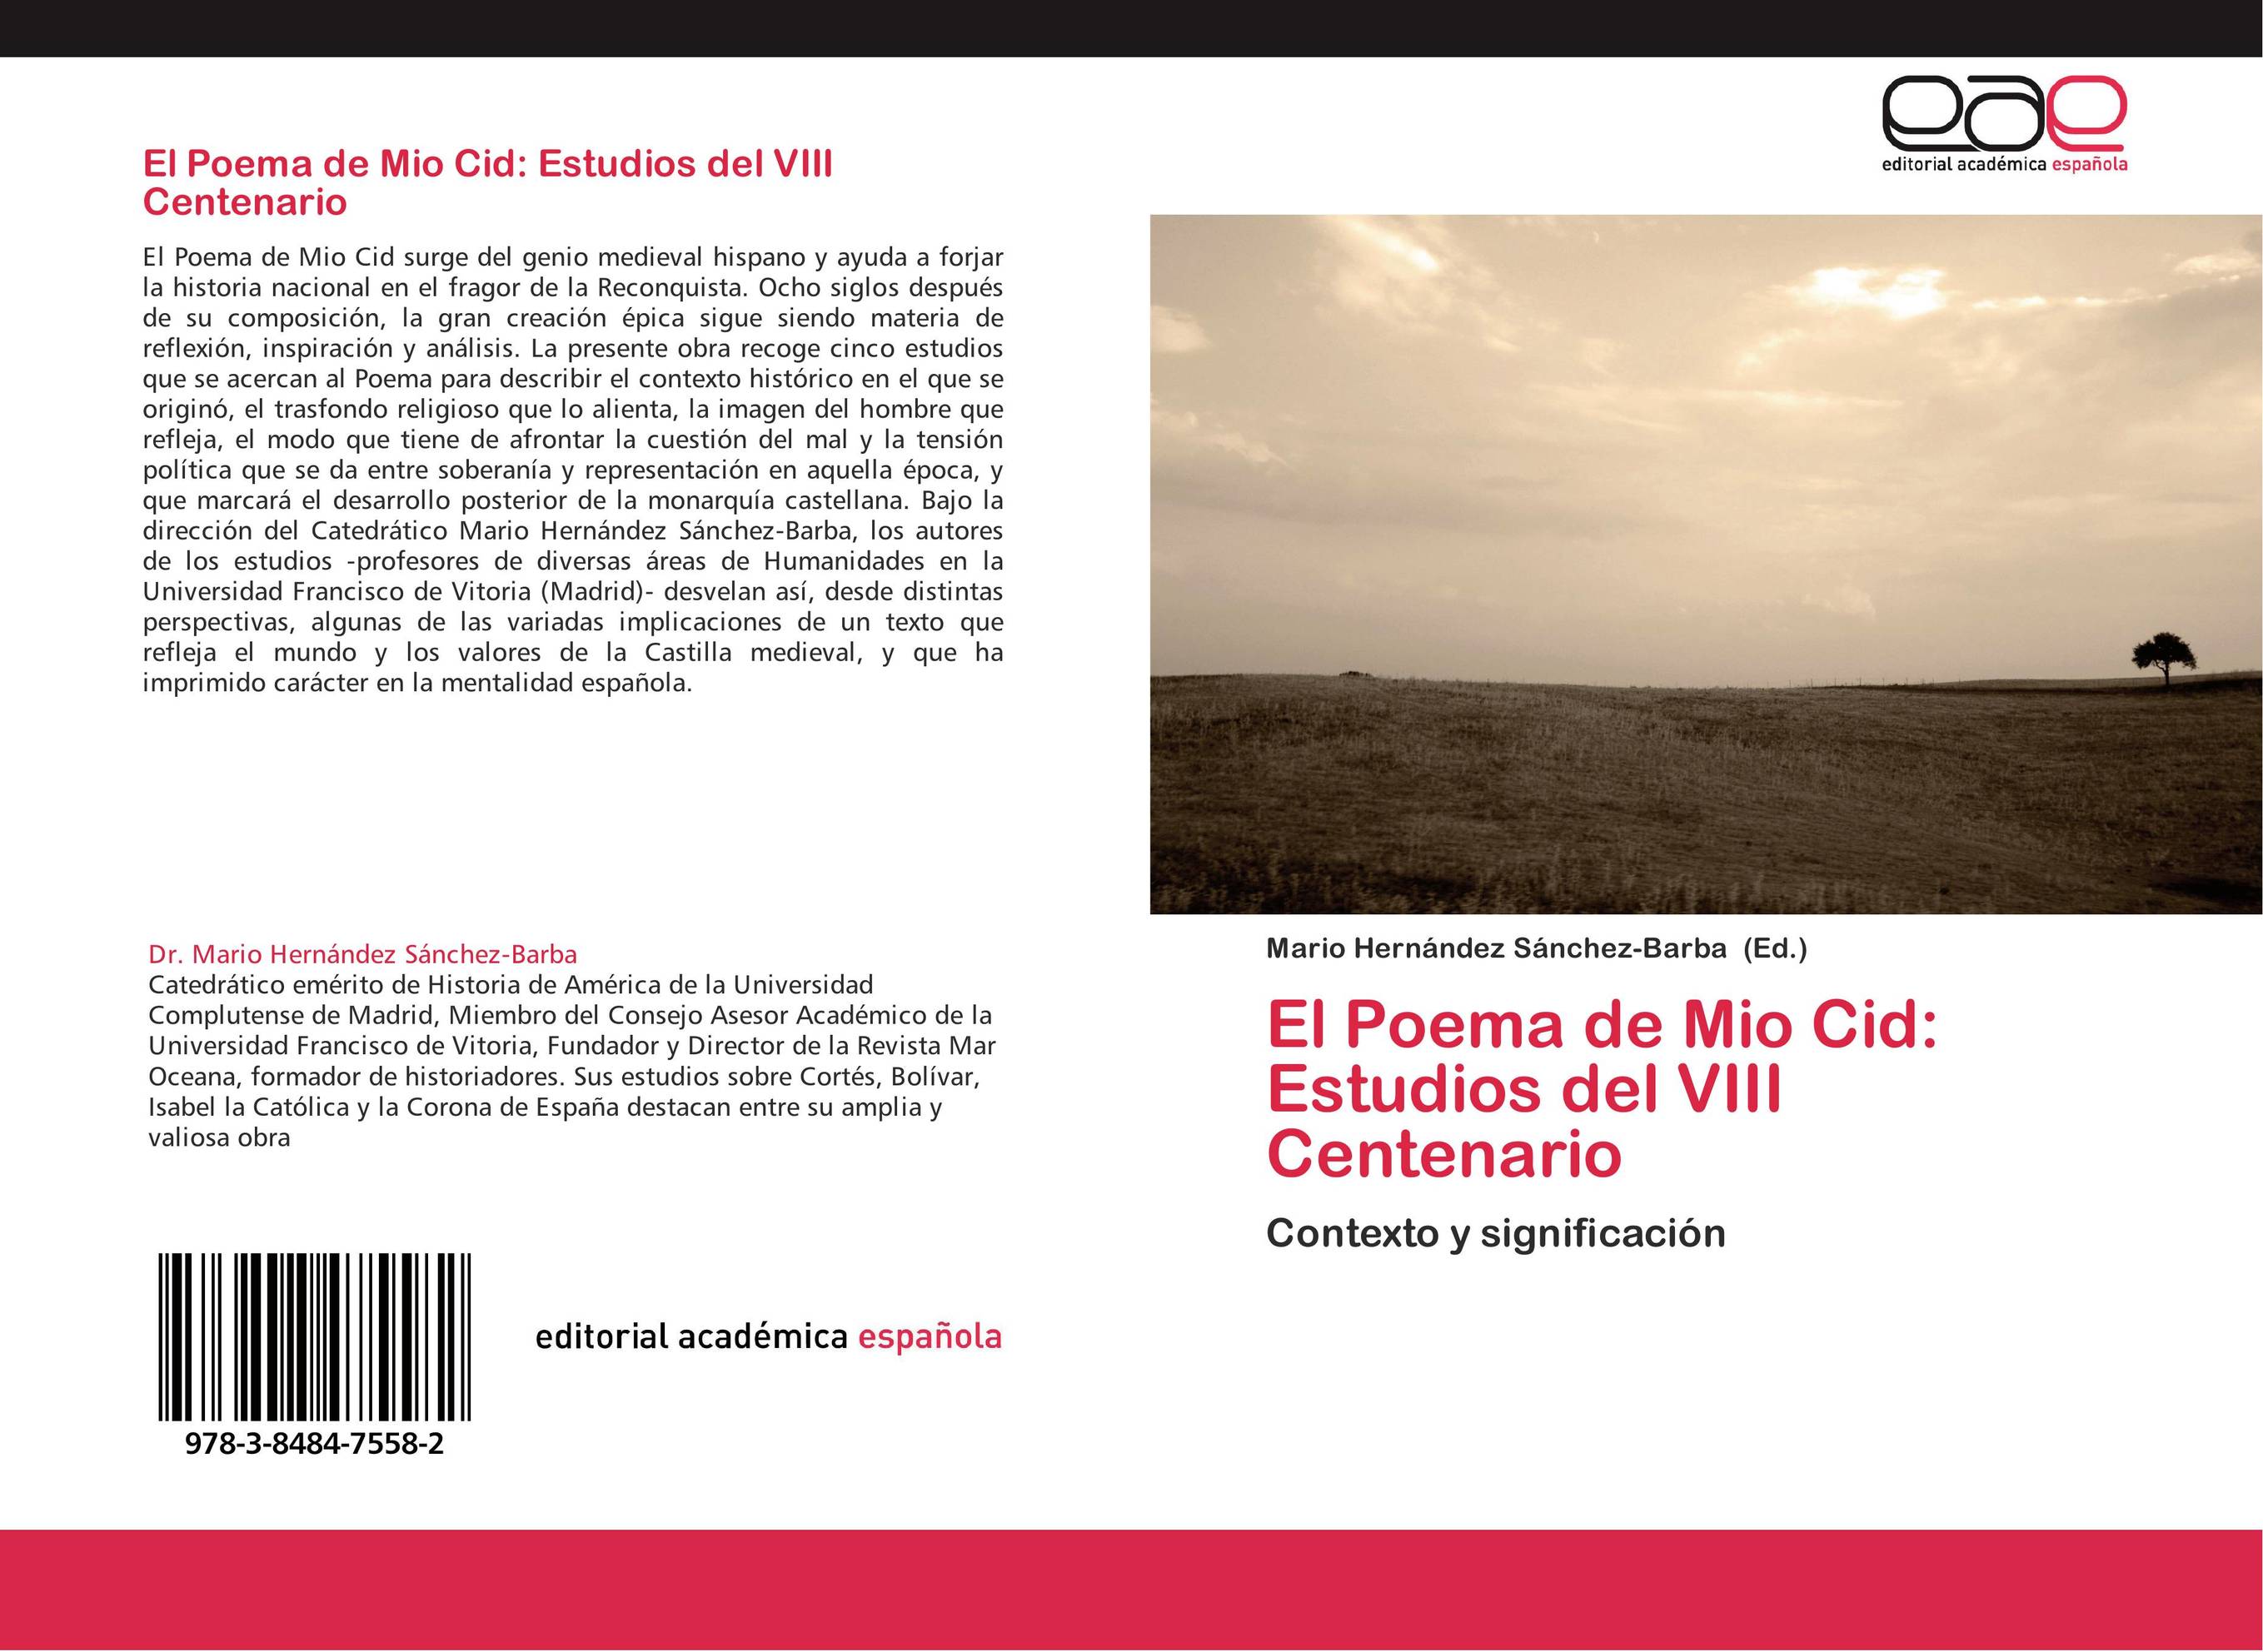 El Poema de Mio Cid: Estudios del VIII Centenario